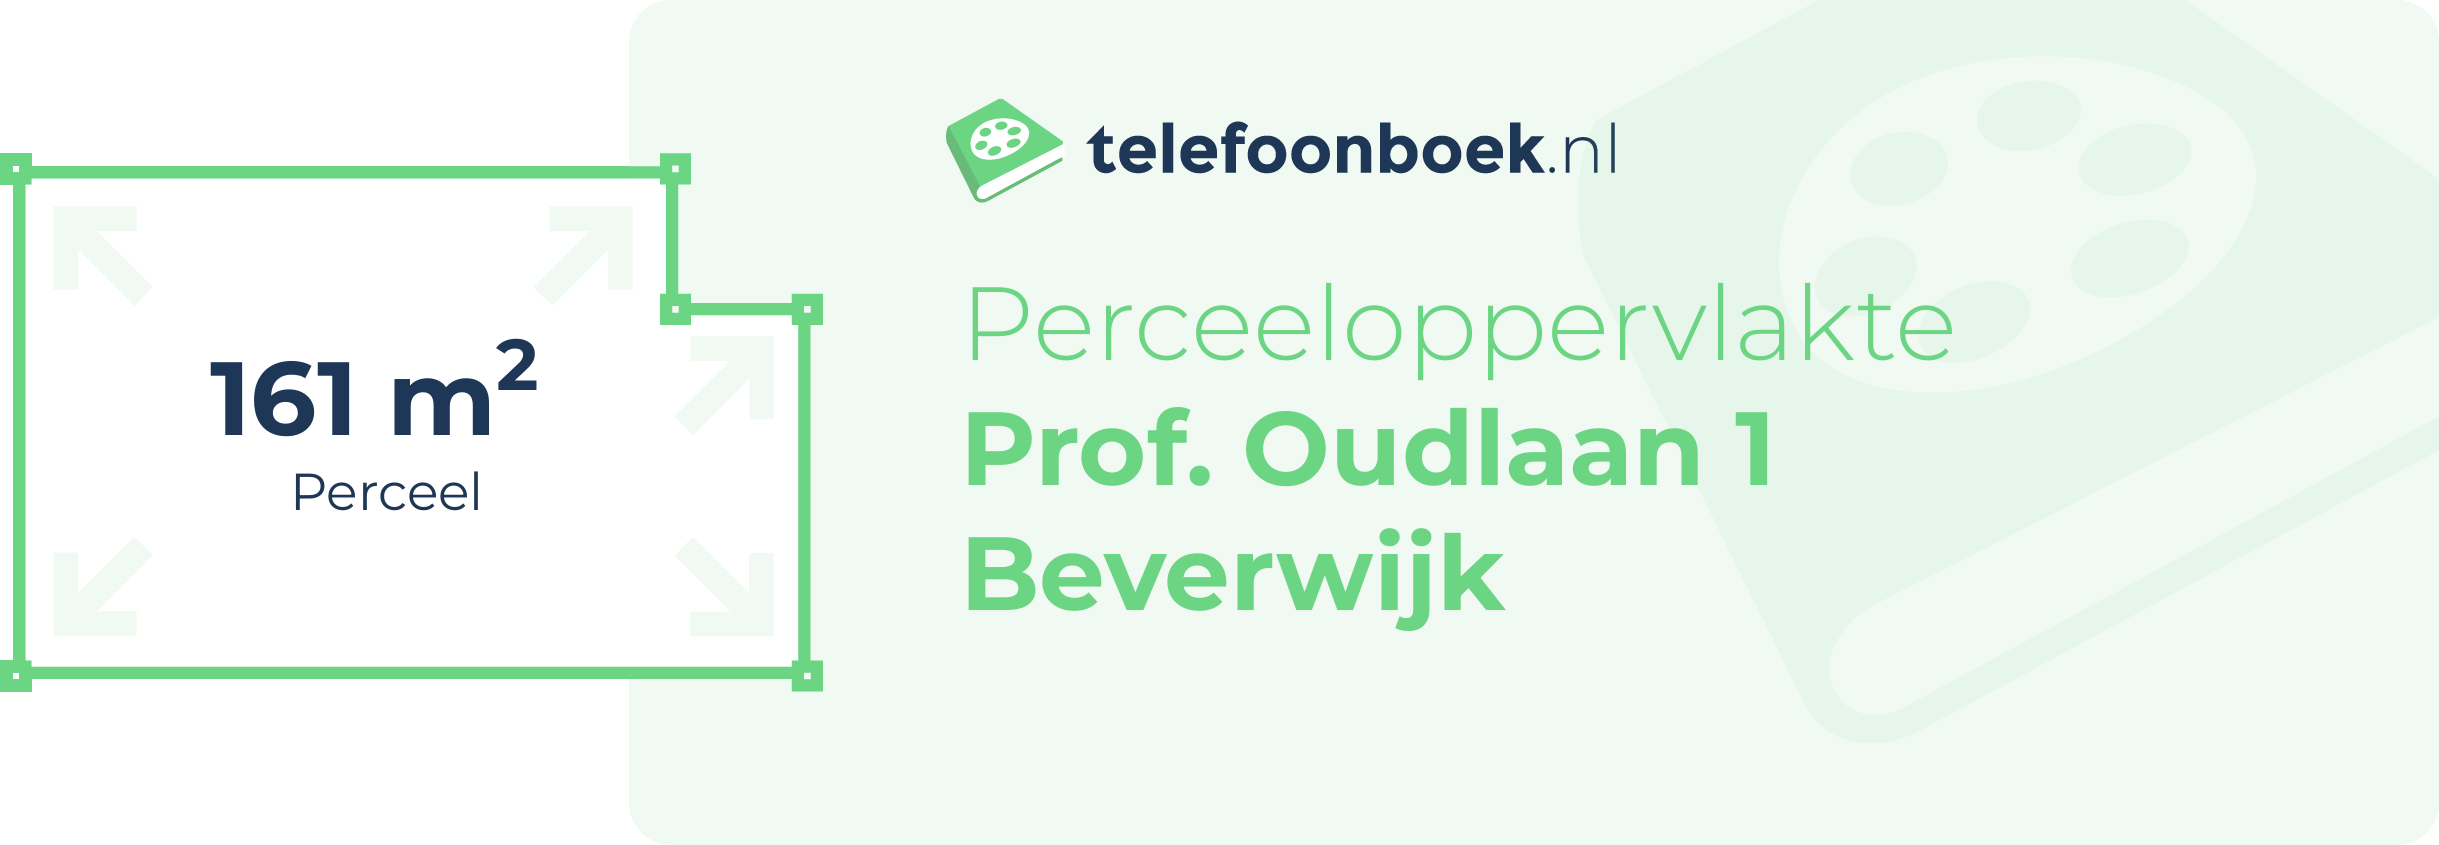 Perceeloppervlakte Prof. Oudlaan 1 Beverwijk